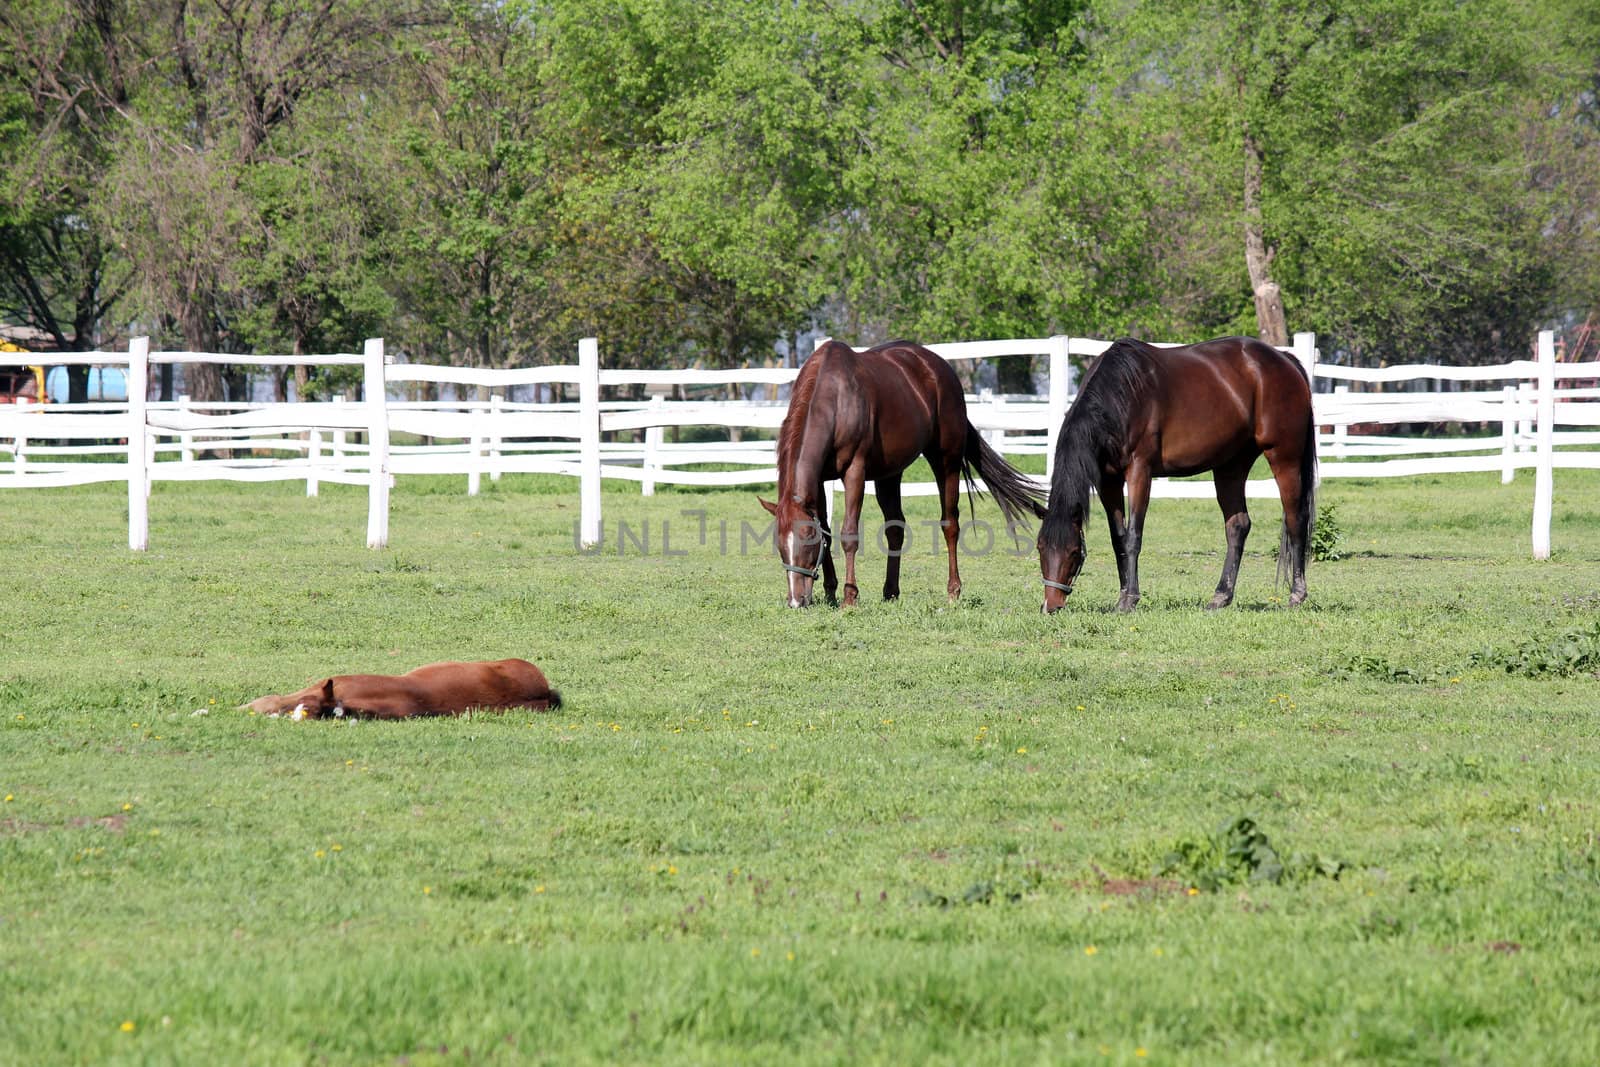 horses grazing in corral farm scene